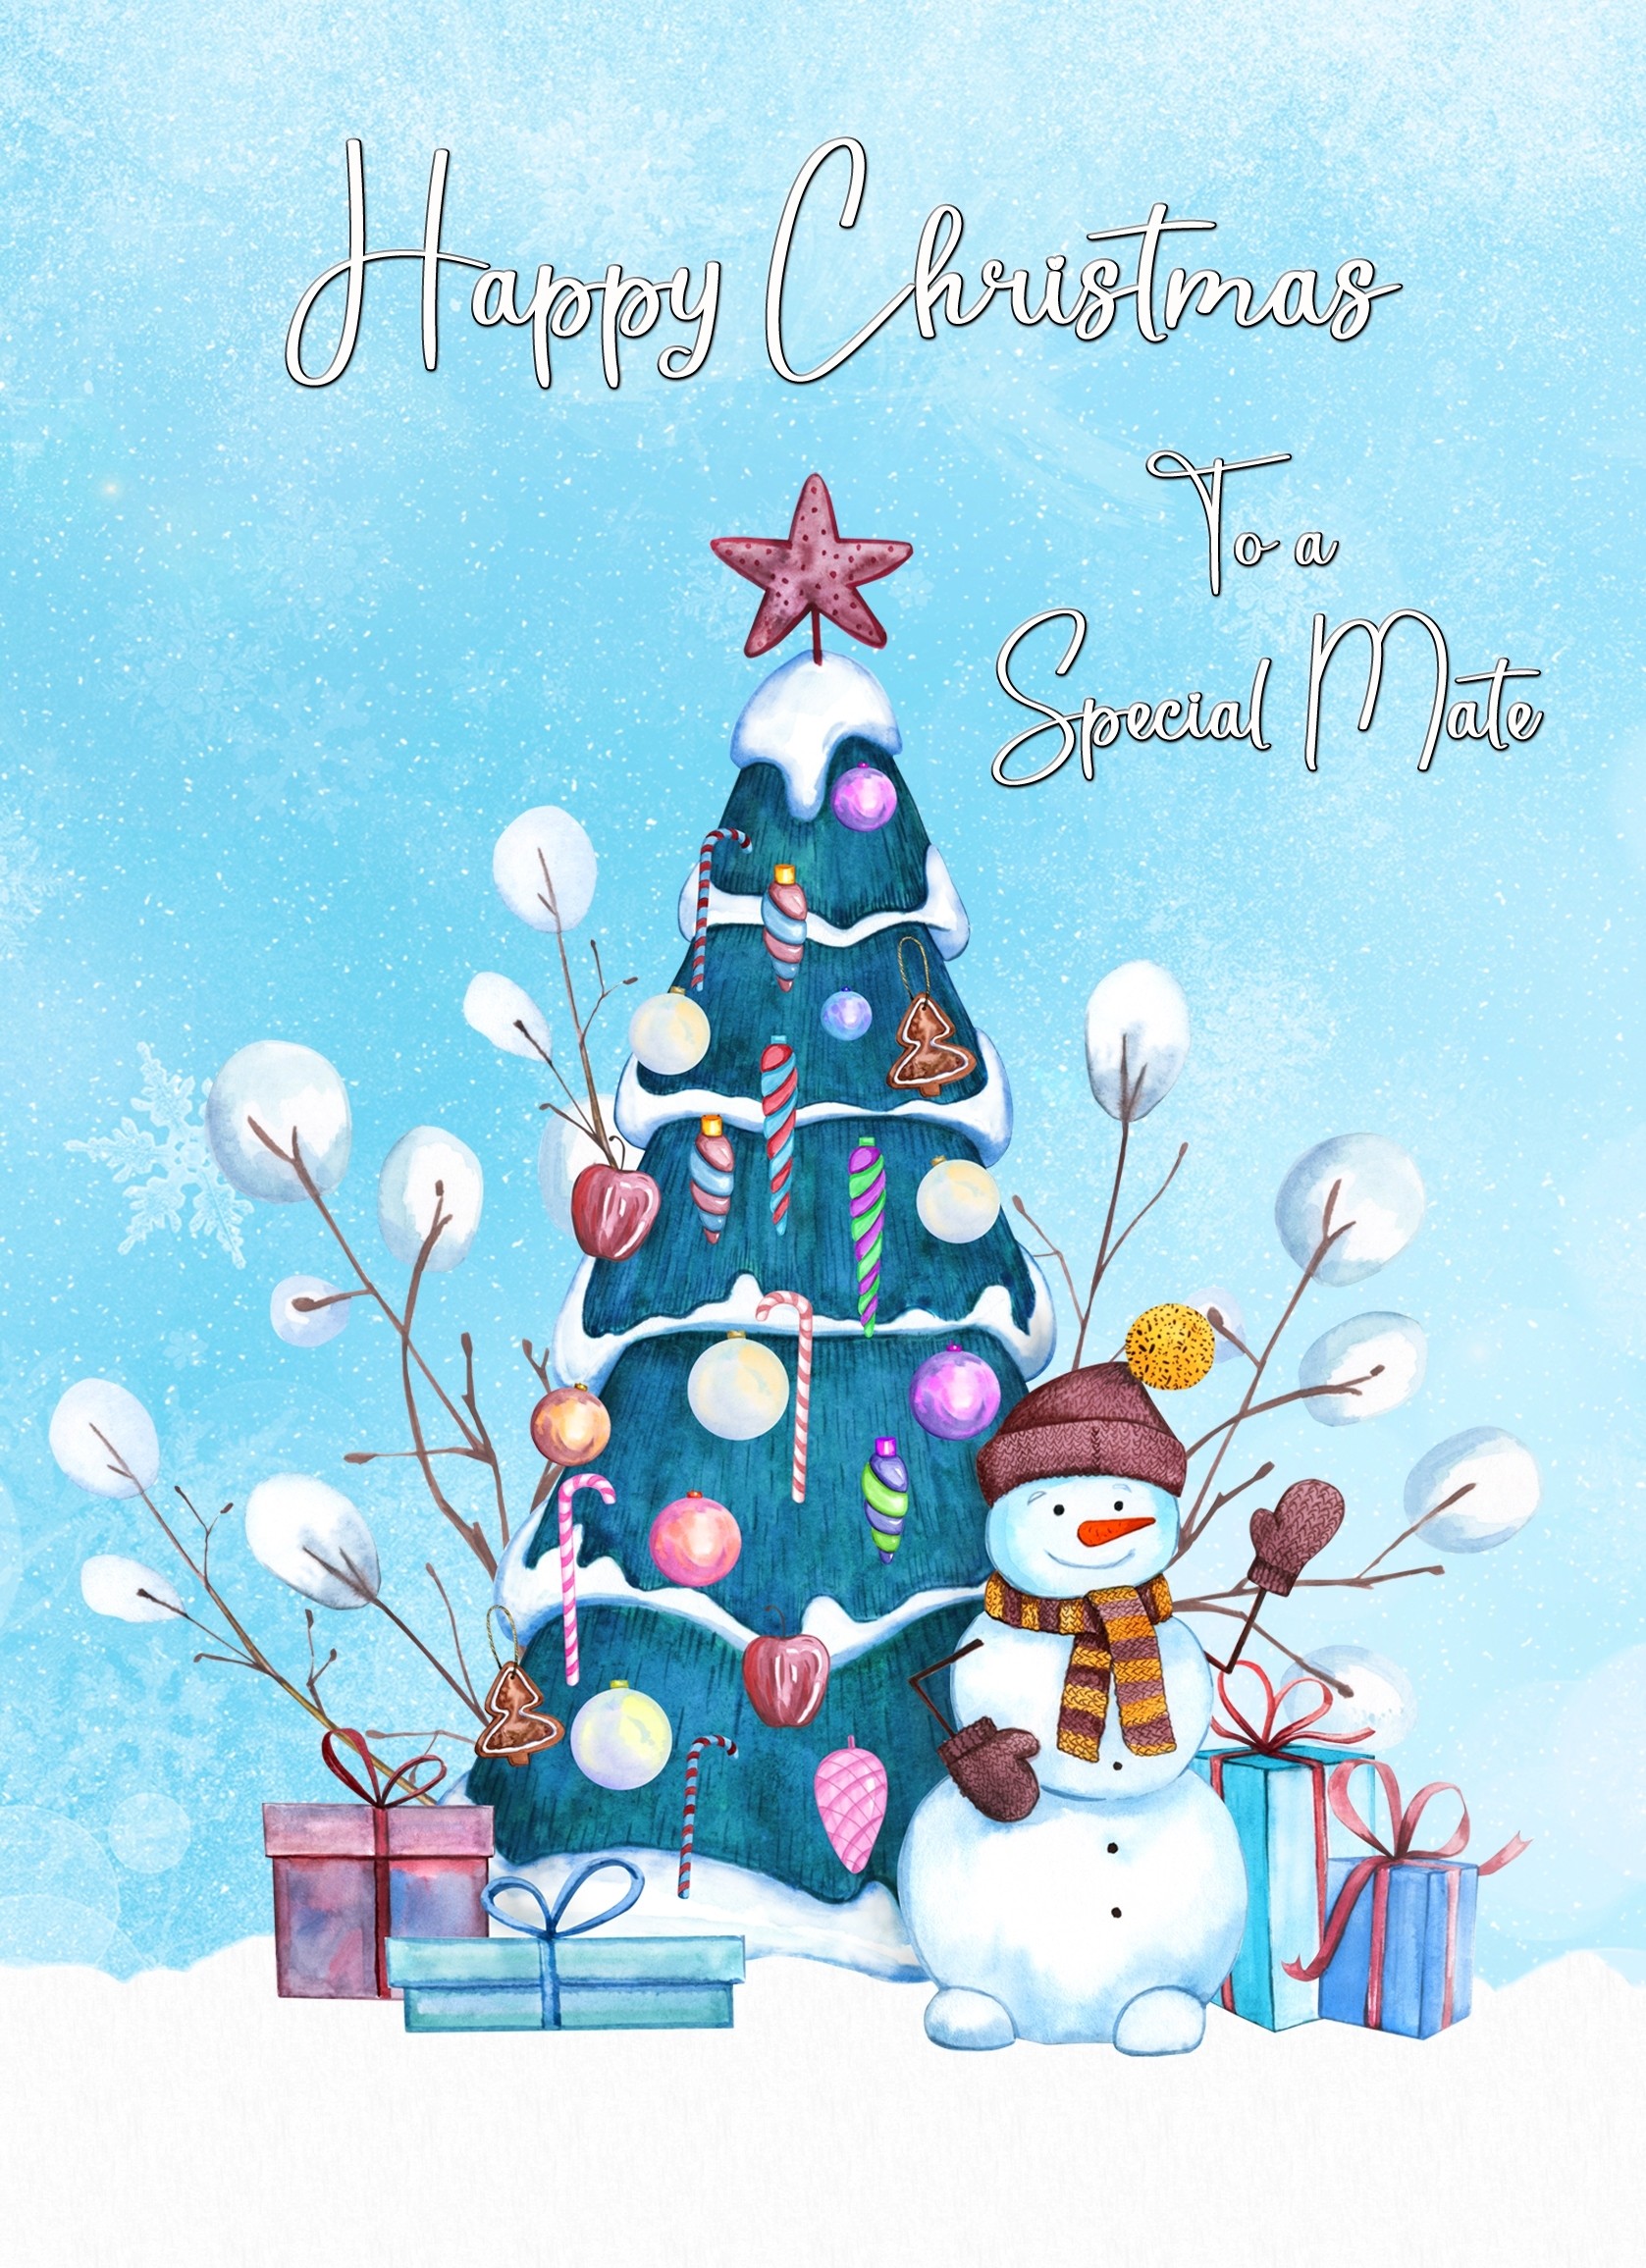 Christmas Card For Mate (Blue Christmas Tree)